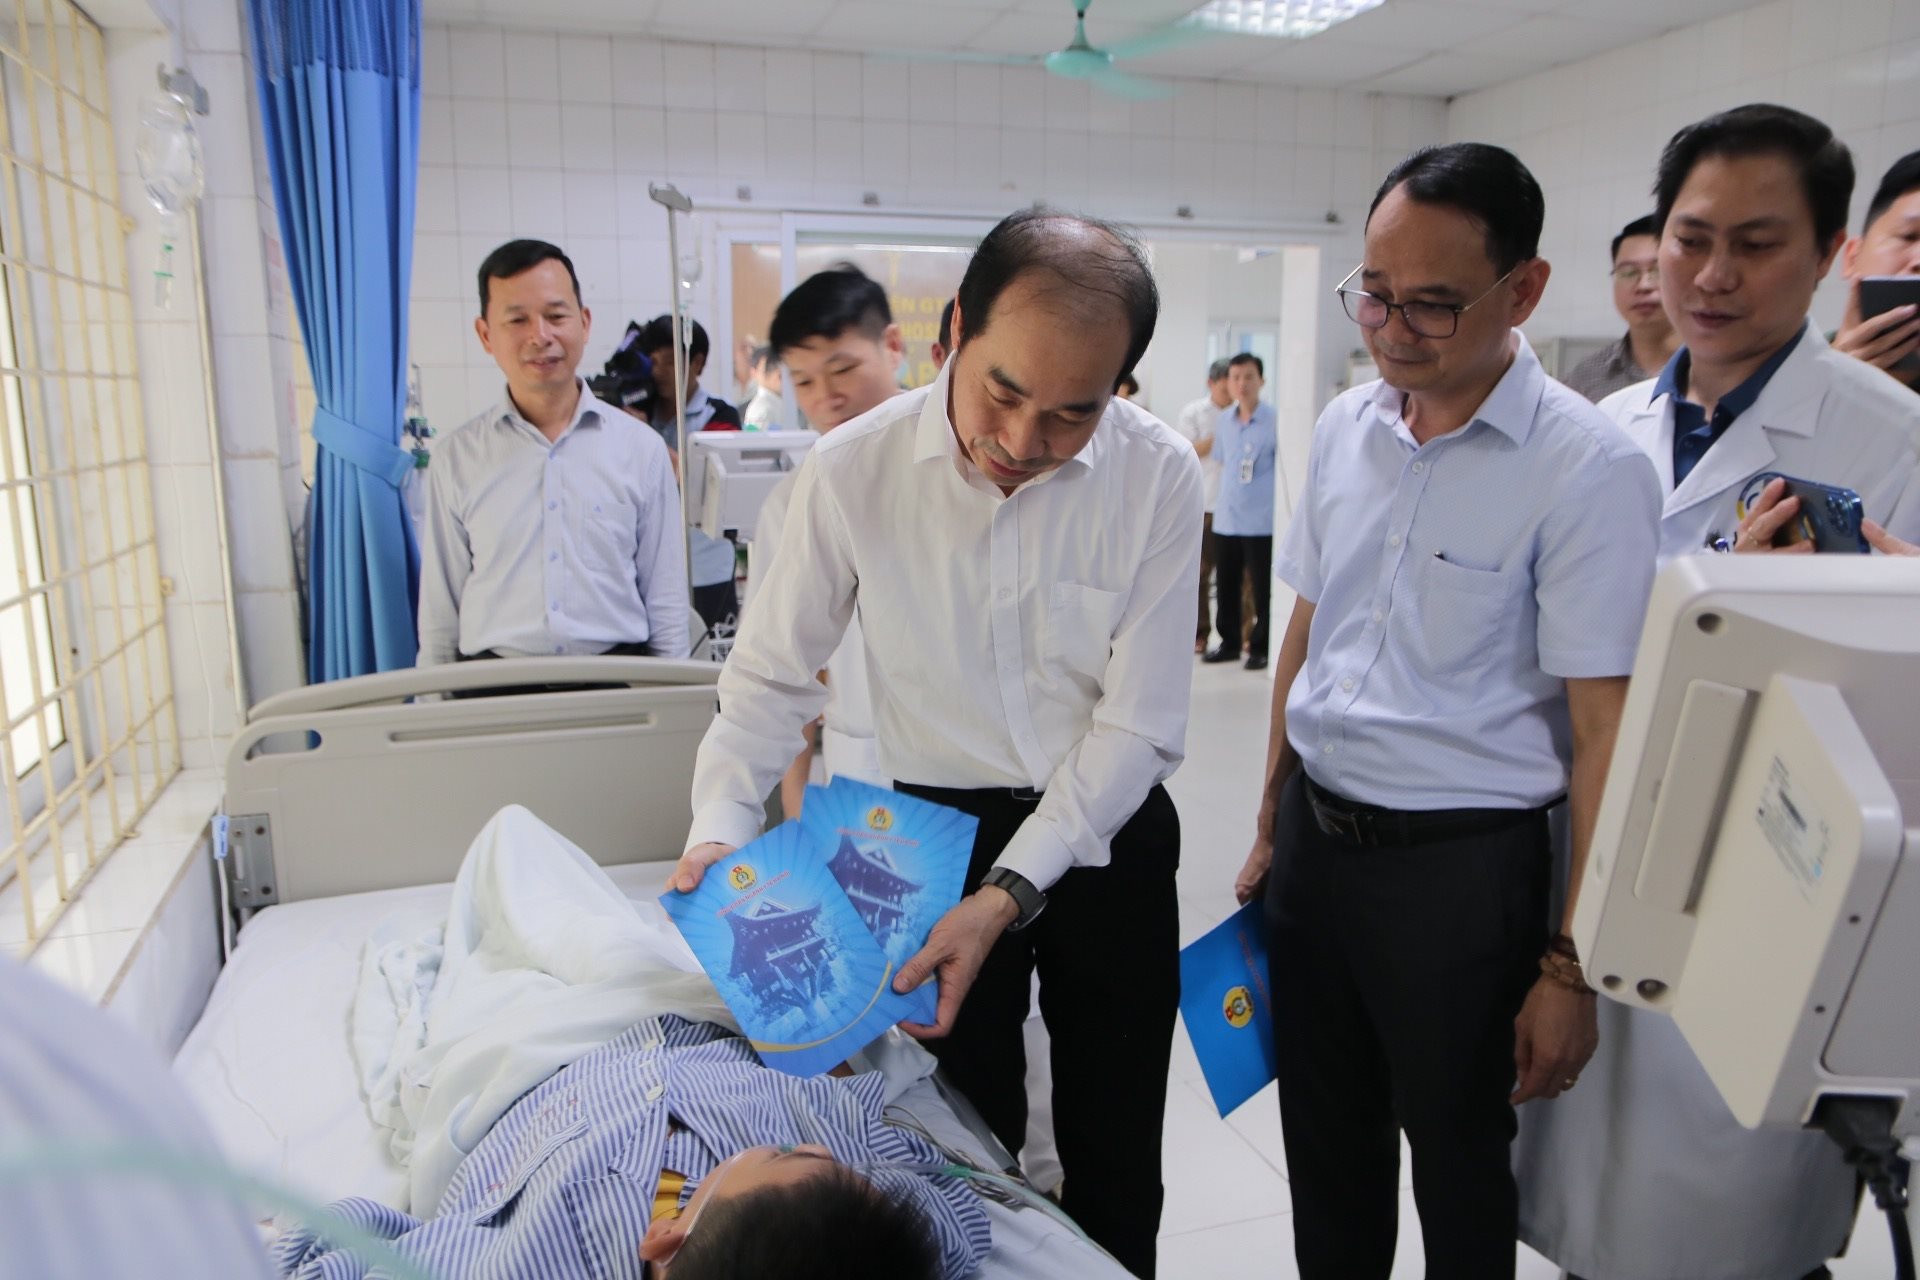 Ông Nguyễn Đình Hưng, Phó Giám đốc phụ trách Sở Y tế Hà Nội trao quà cho các bệnh nhân vụ cháy. Ảnh: Duy Tuân